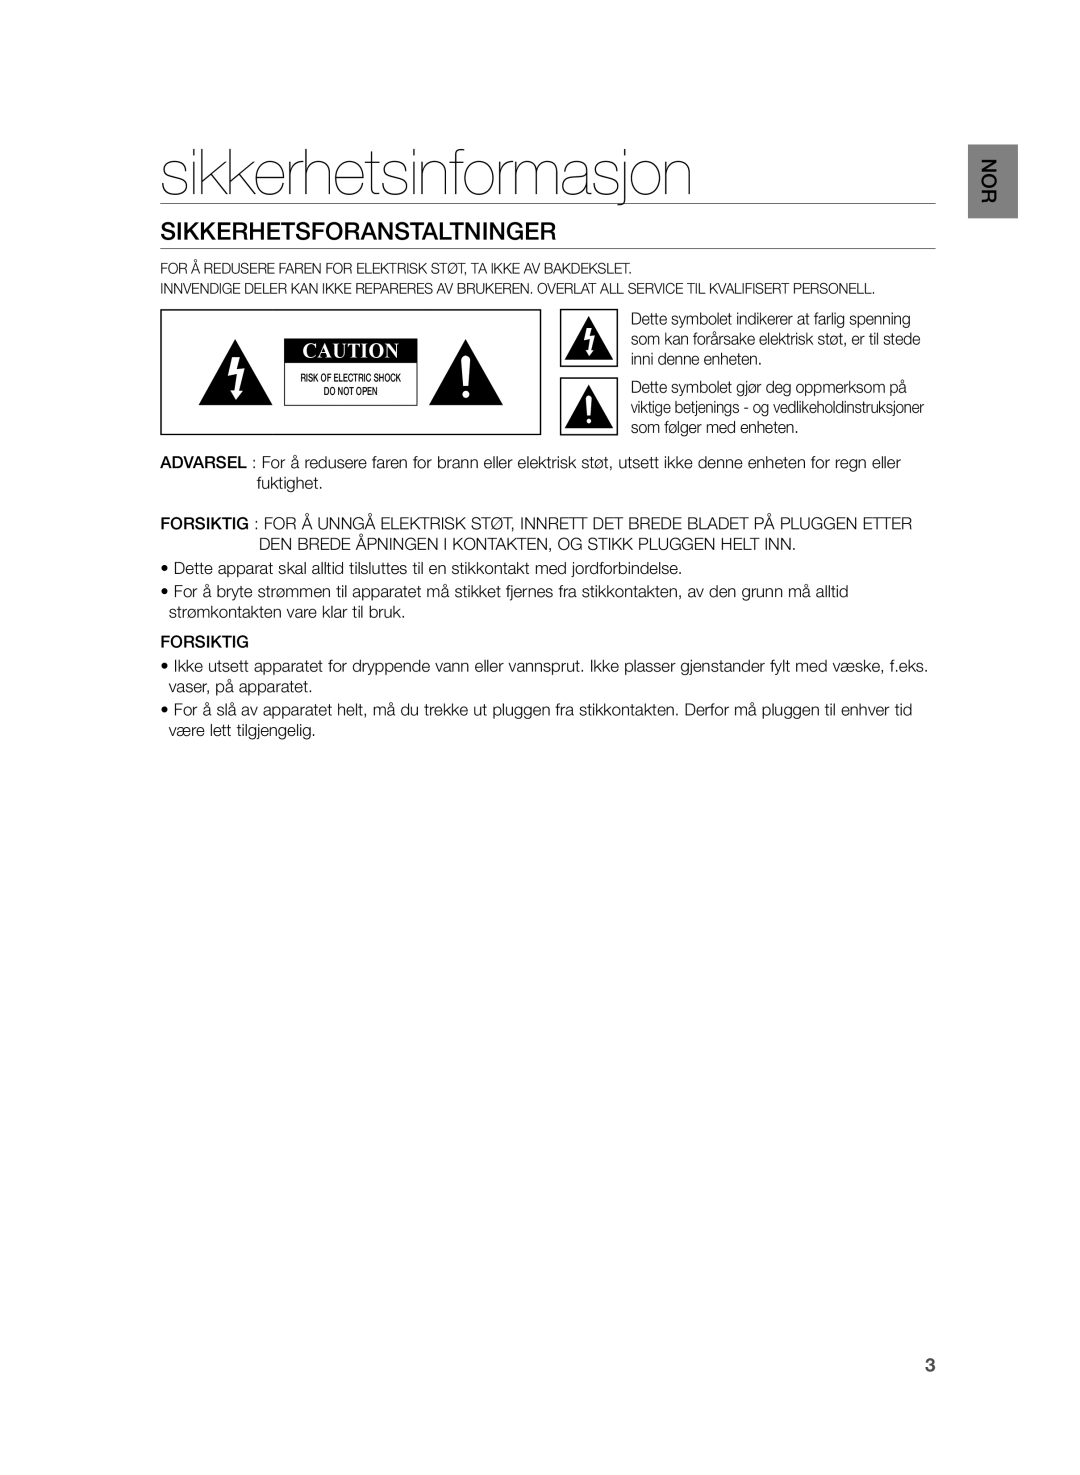 Samsung HW-H355/XE manual Sikkerhetsinformasjon, Sikkerhetsforanstaltninger, Forsiktig 